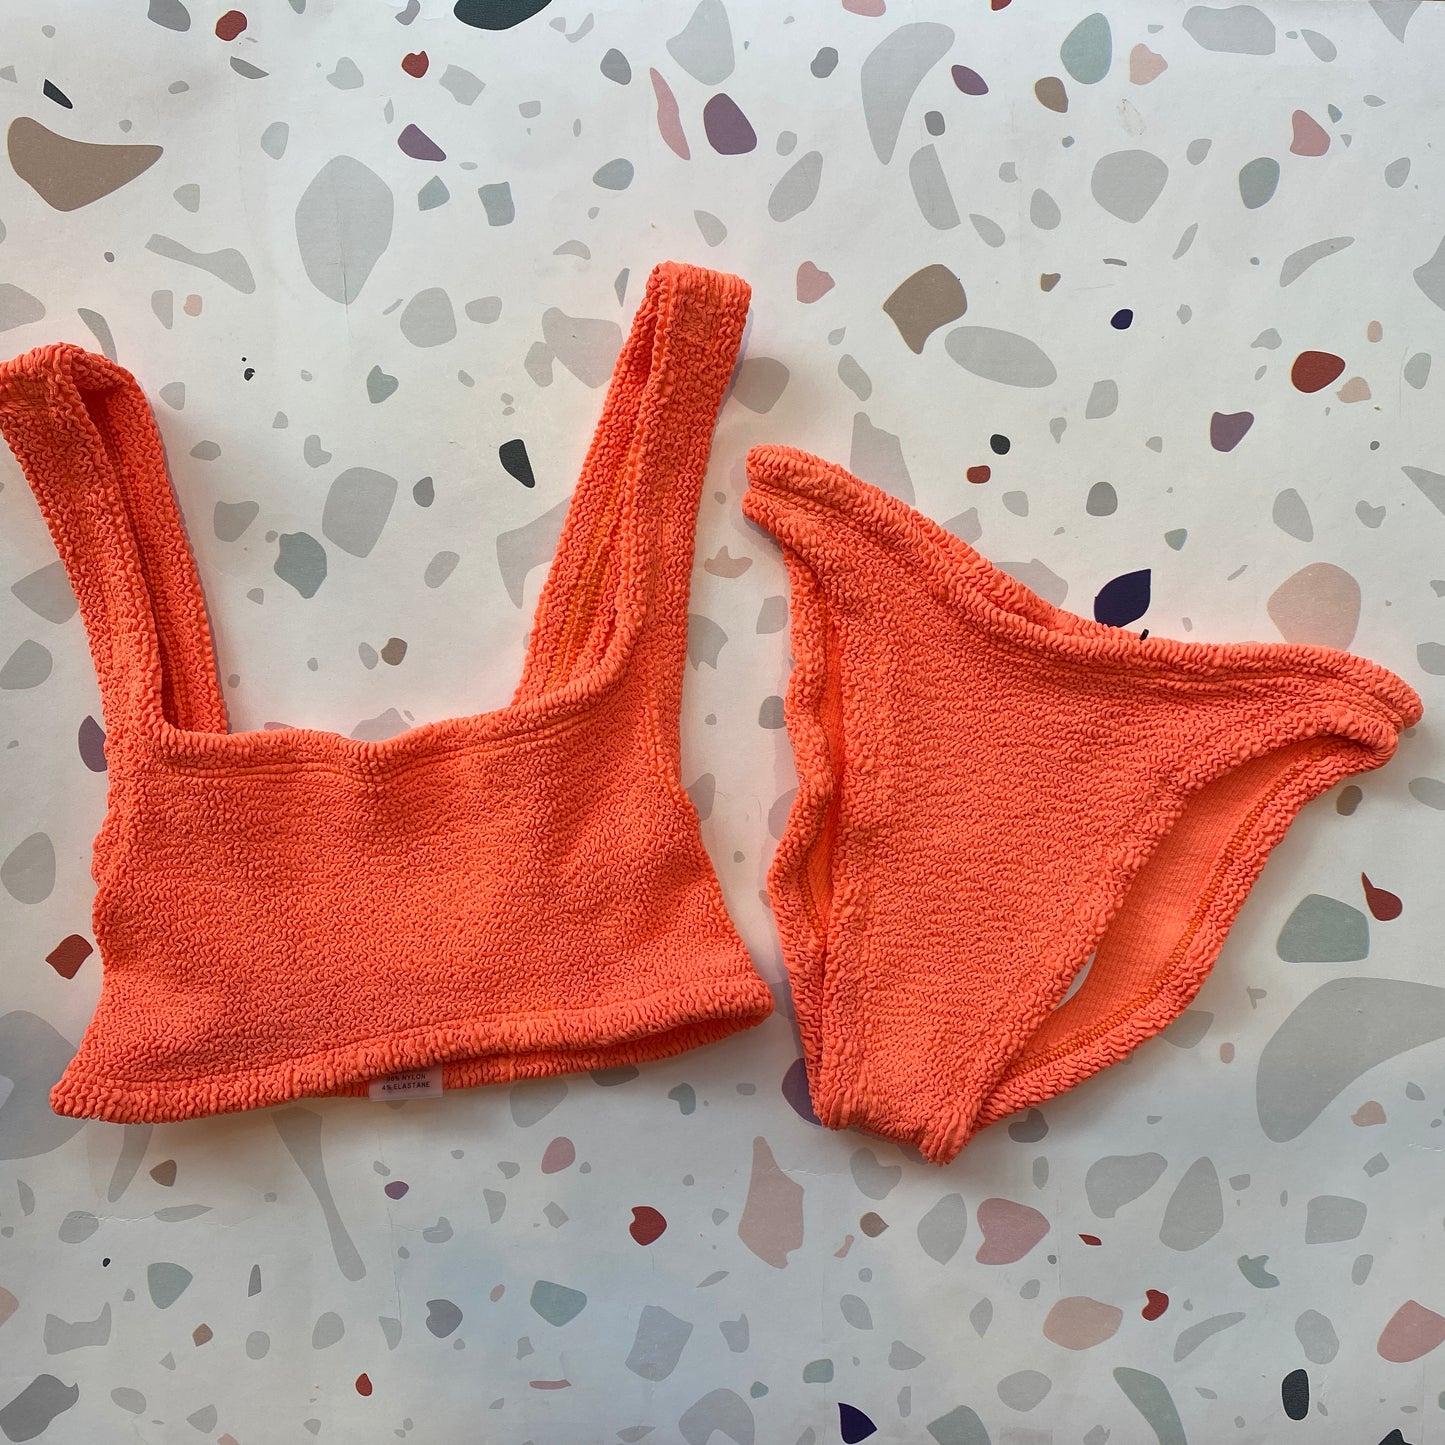 Hunza G: Xandra Bikini Set - Orange